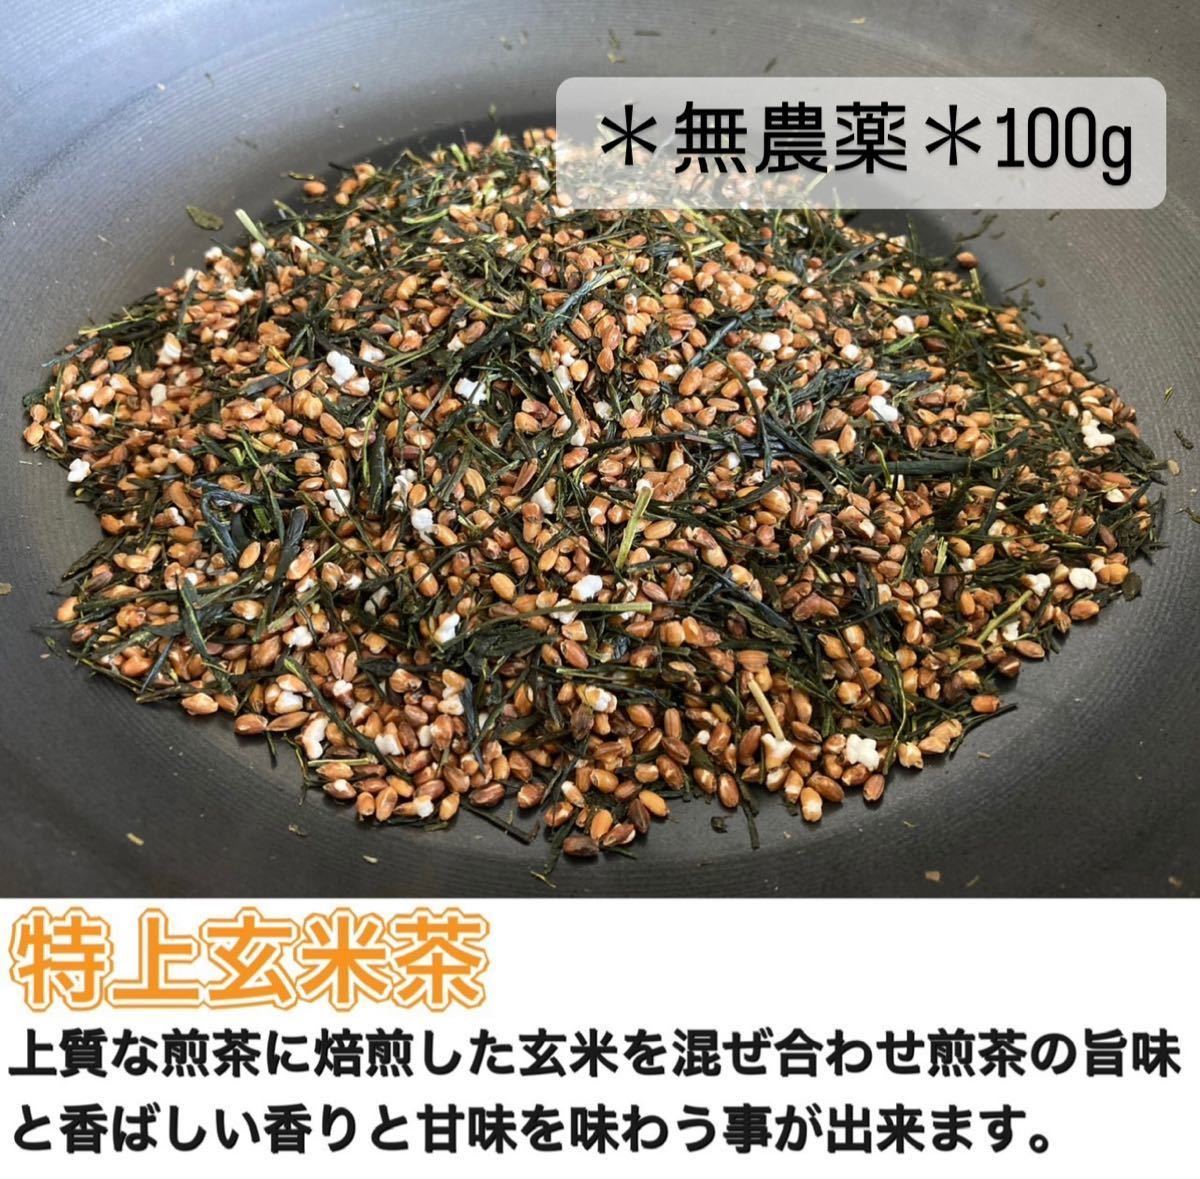 [Пестицид -безрисовок] 100 г коричневого рисового чая коричневого чая (около 33 чашек) Химическое удобрение, гербицид, домашний скот компост неиспользованный Ujicha 100%